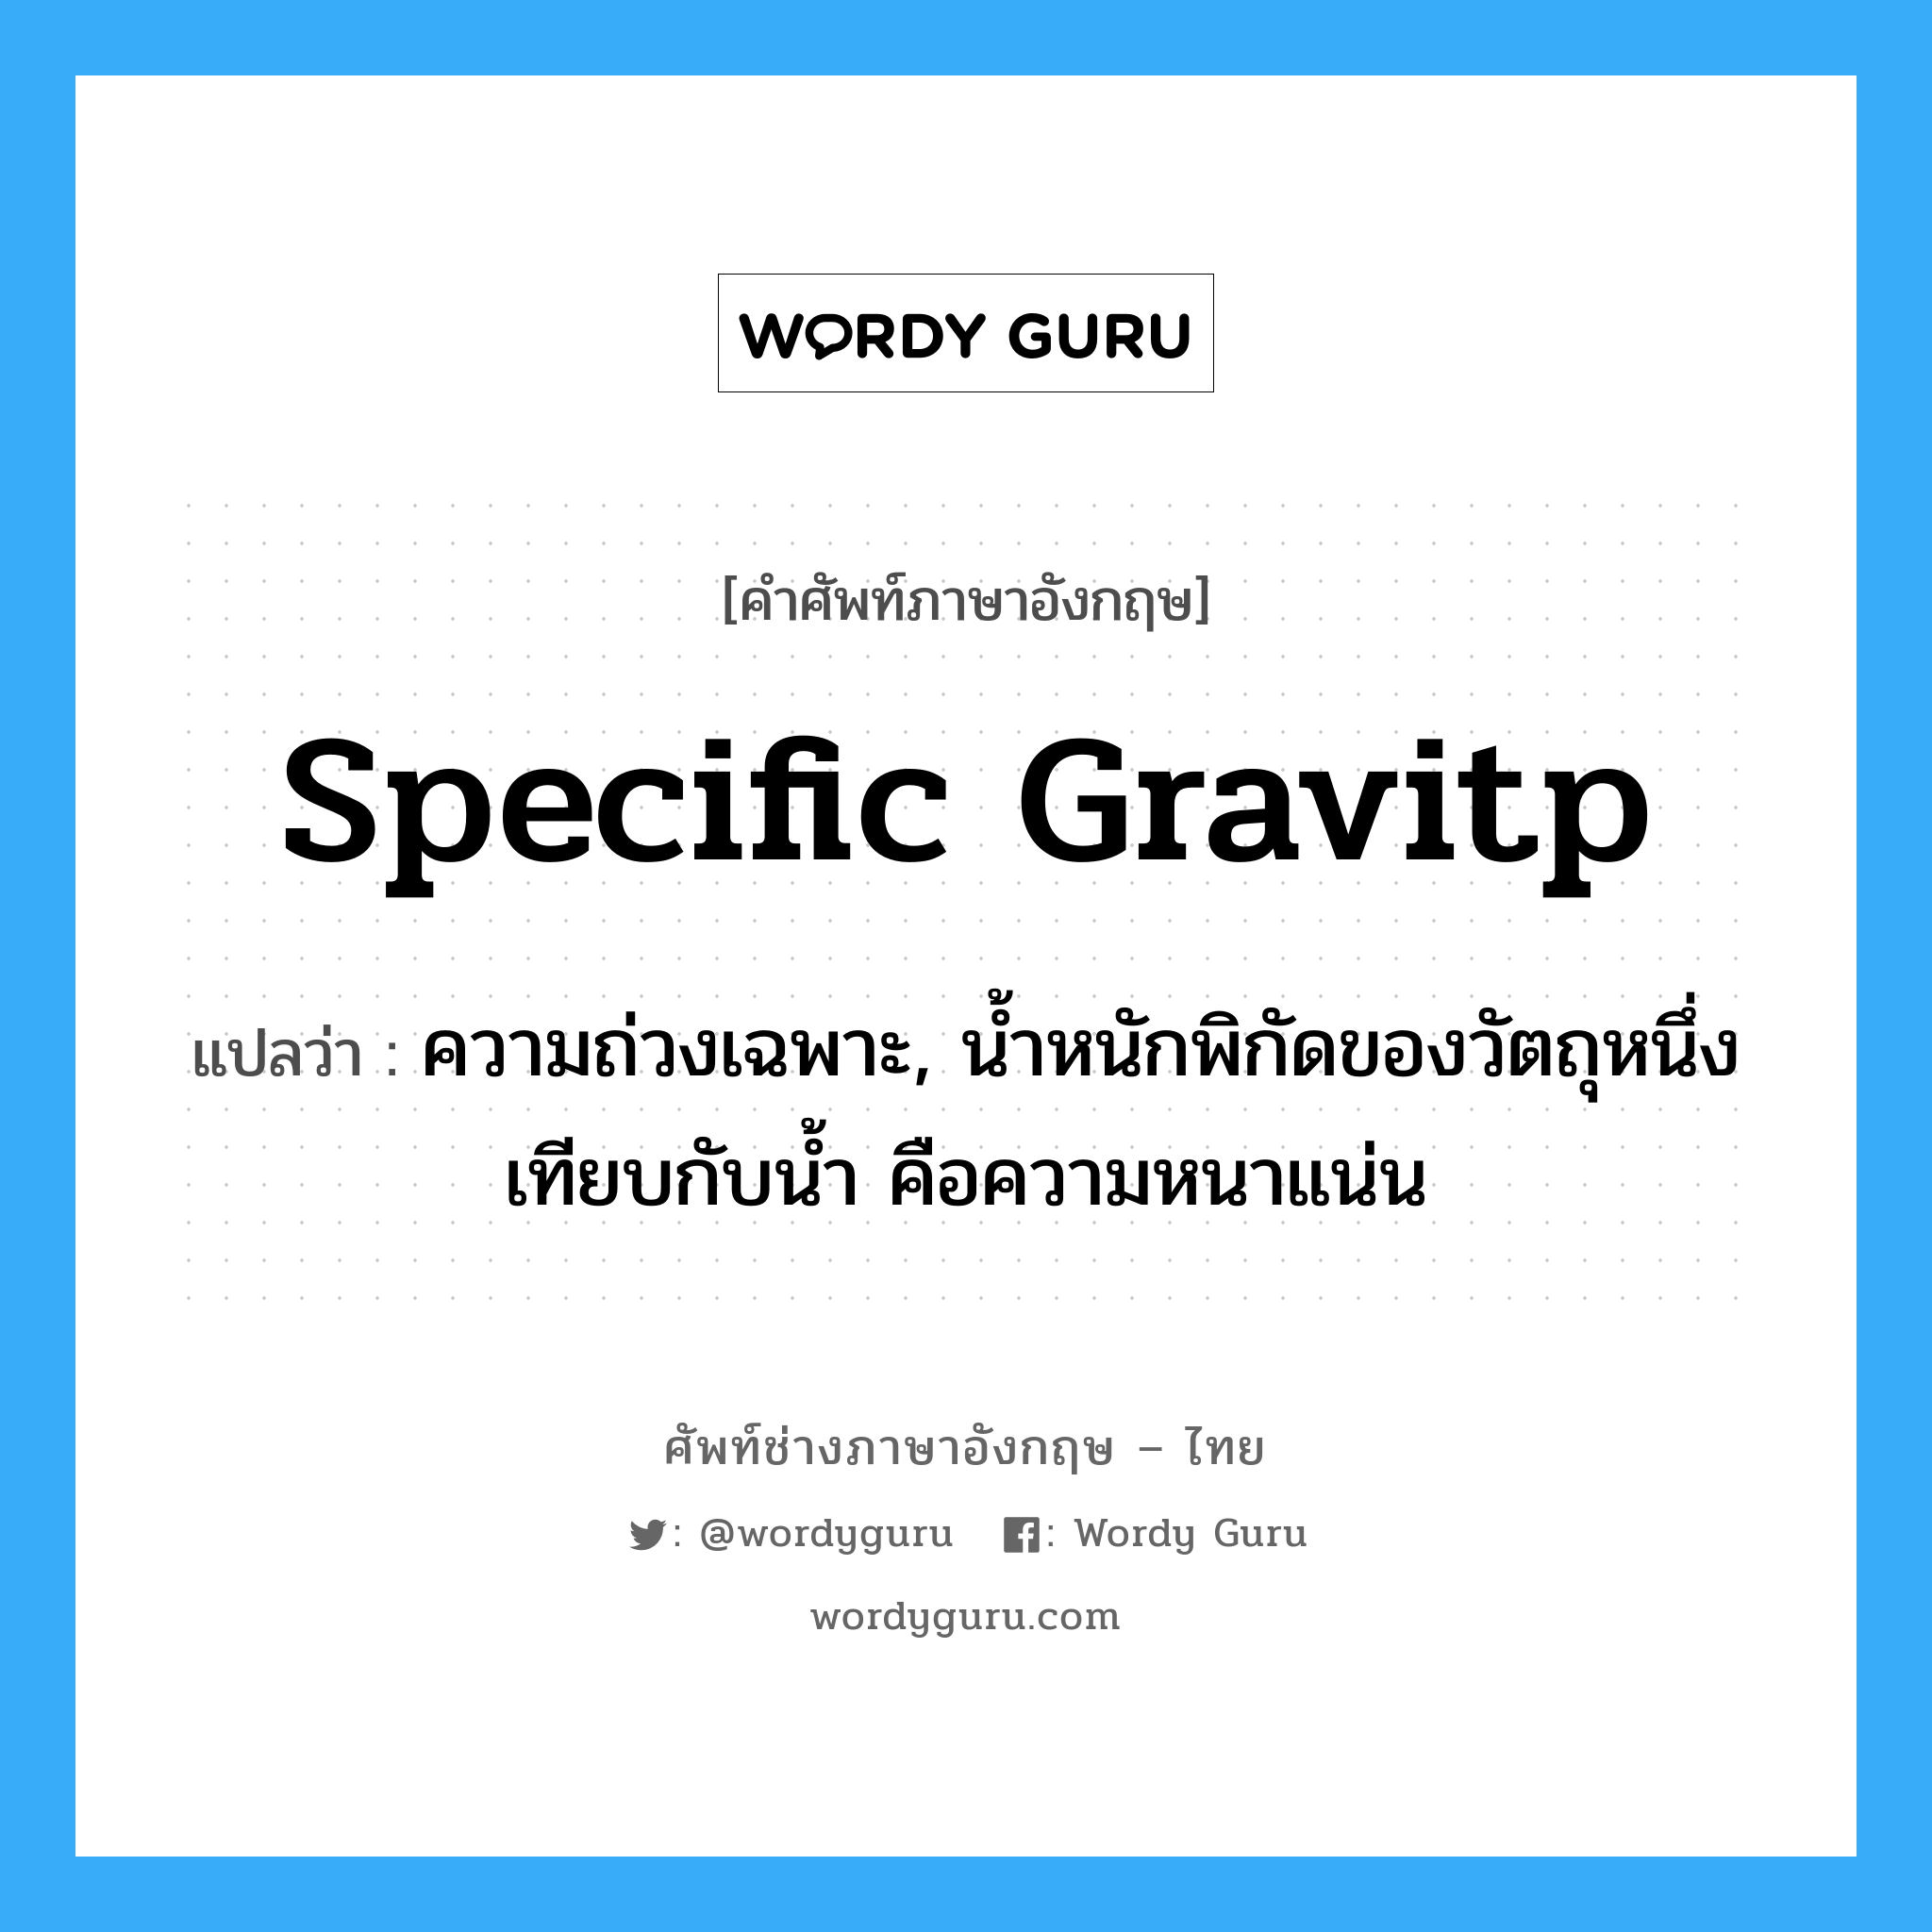 specific gravitp แปลว่า?, คำศัพท์ช่างภาษาอังกฤษ - ไทย specific gravitp คำศัพท์ภาษาอังกฤษ specific gravitp แปลว่า ความถ่วงเฉพาะ, น้ำหนักพิกัดของวัตถุหนึ่ง เทียบกับน้ำ คือความหนาแน่น